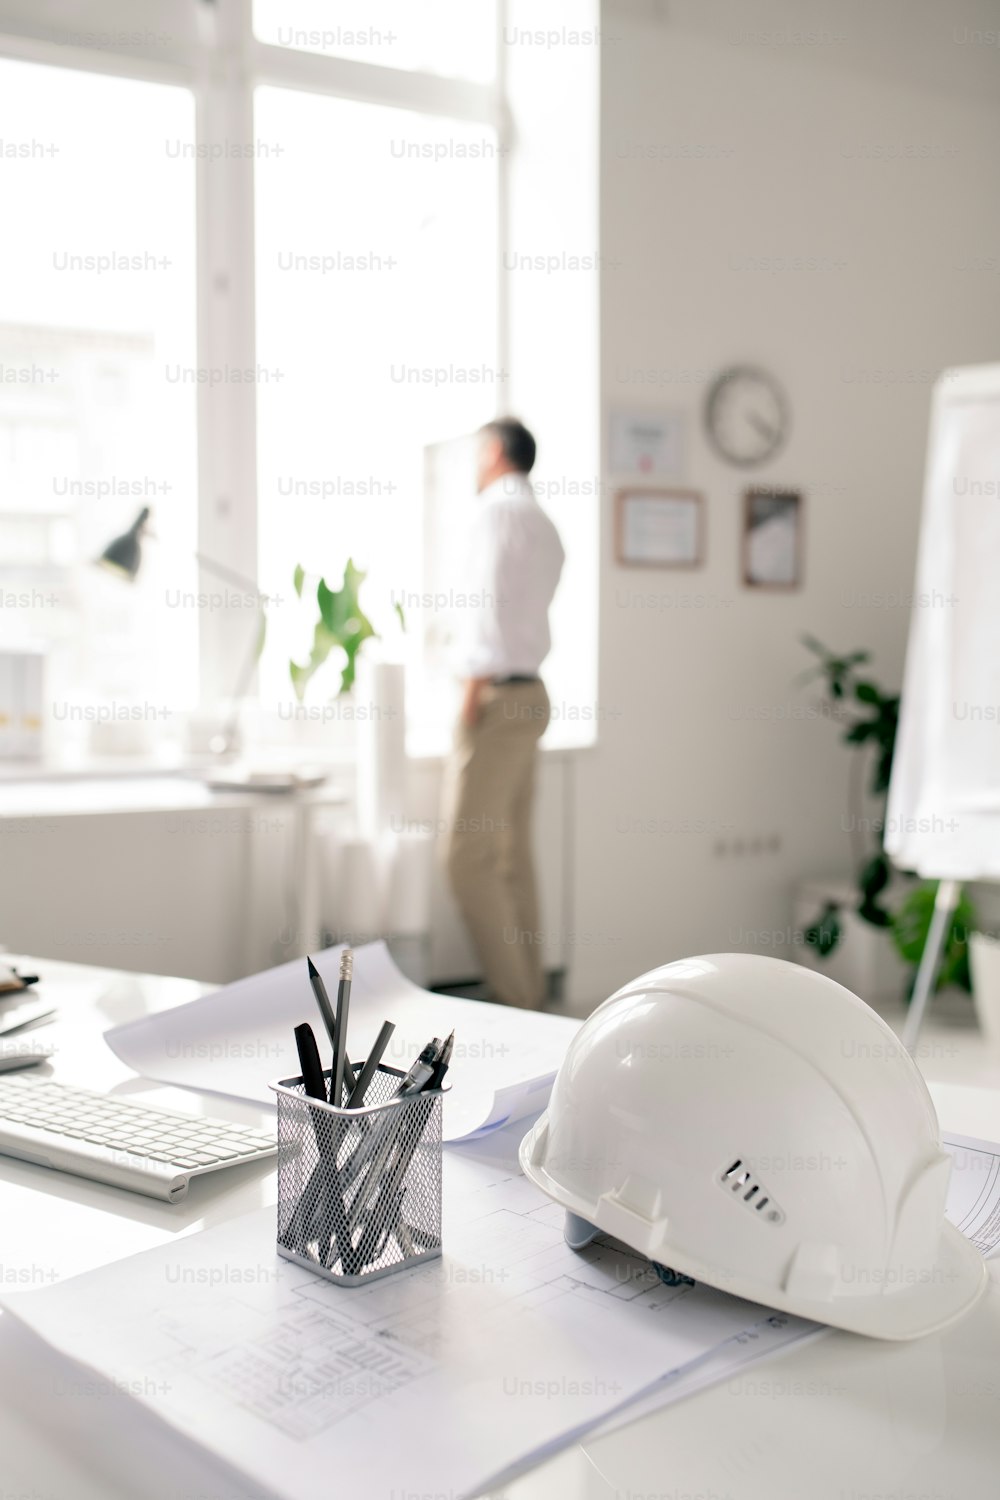 Local de trabalho de arquiteto moderno com capacete branco, monte de lápis e papéis com esboços no escritório